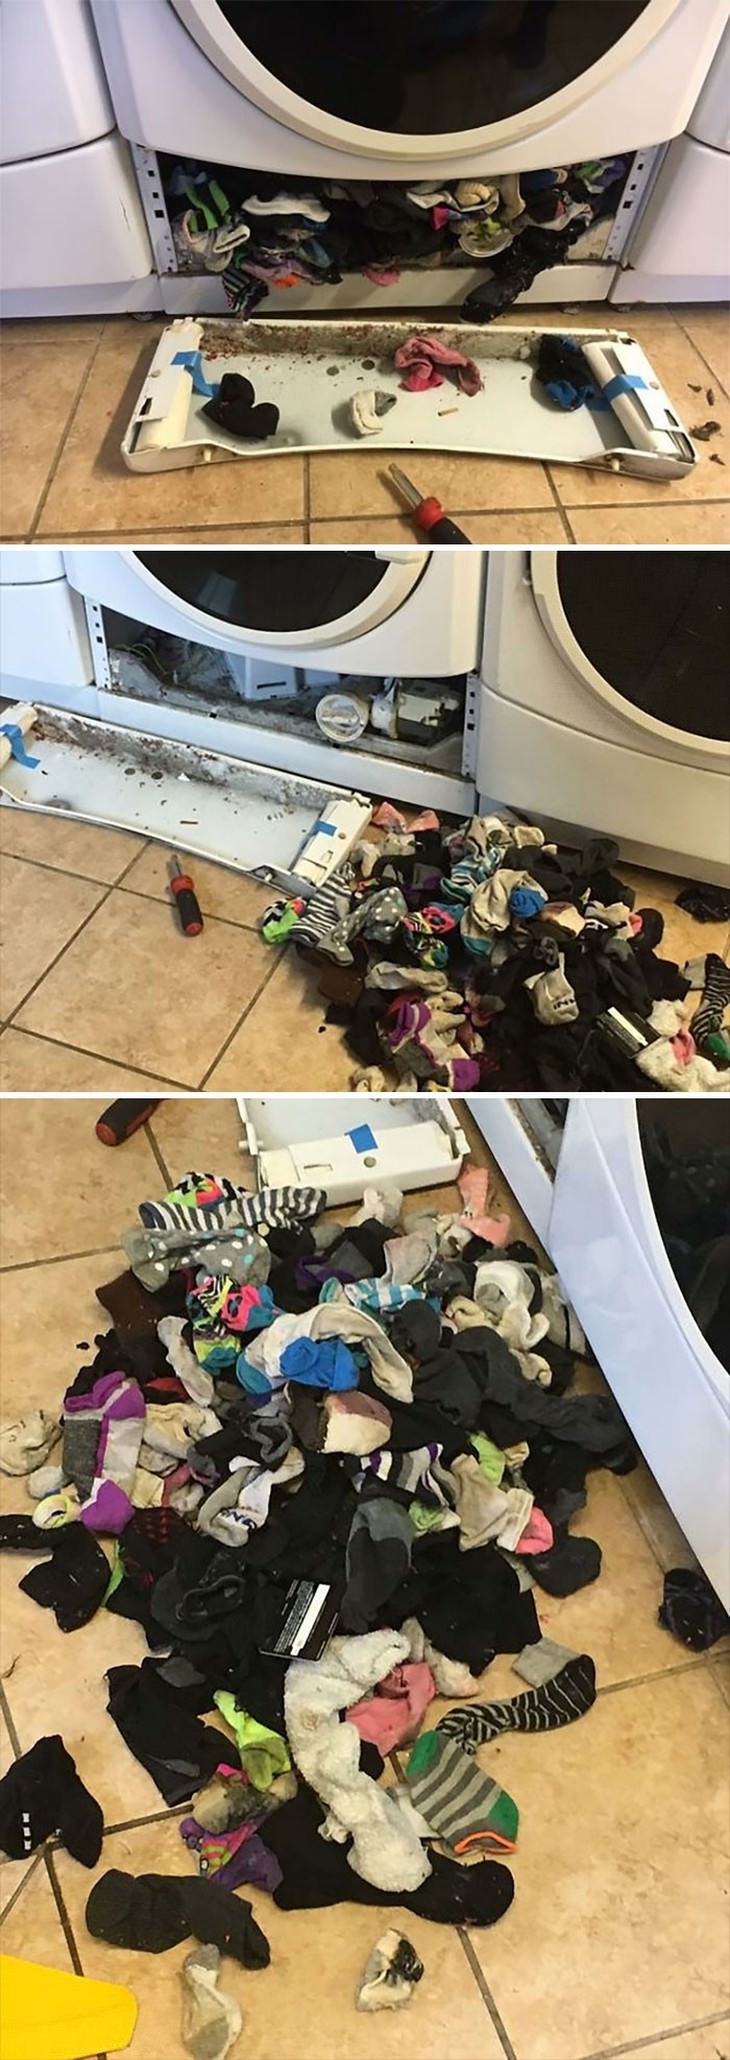 16 Hialrious Laundry Fails